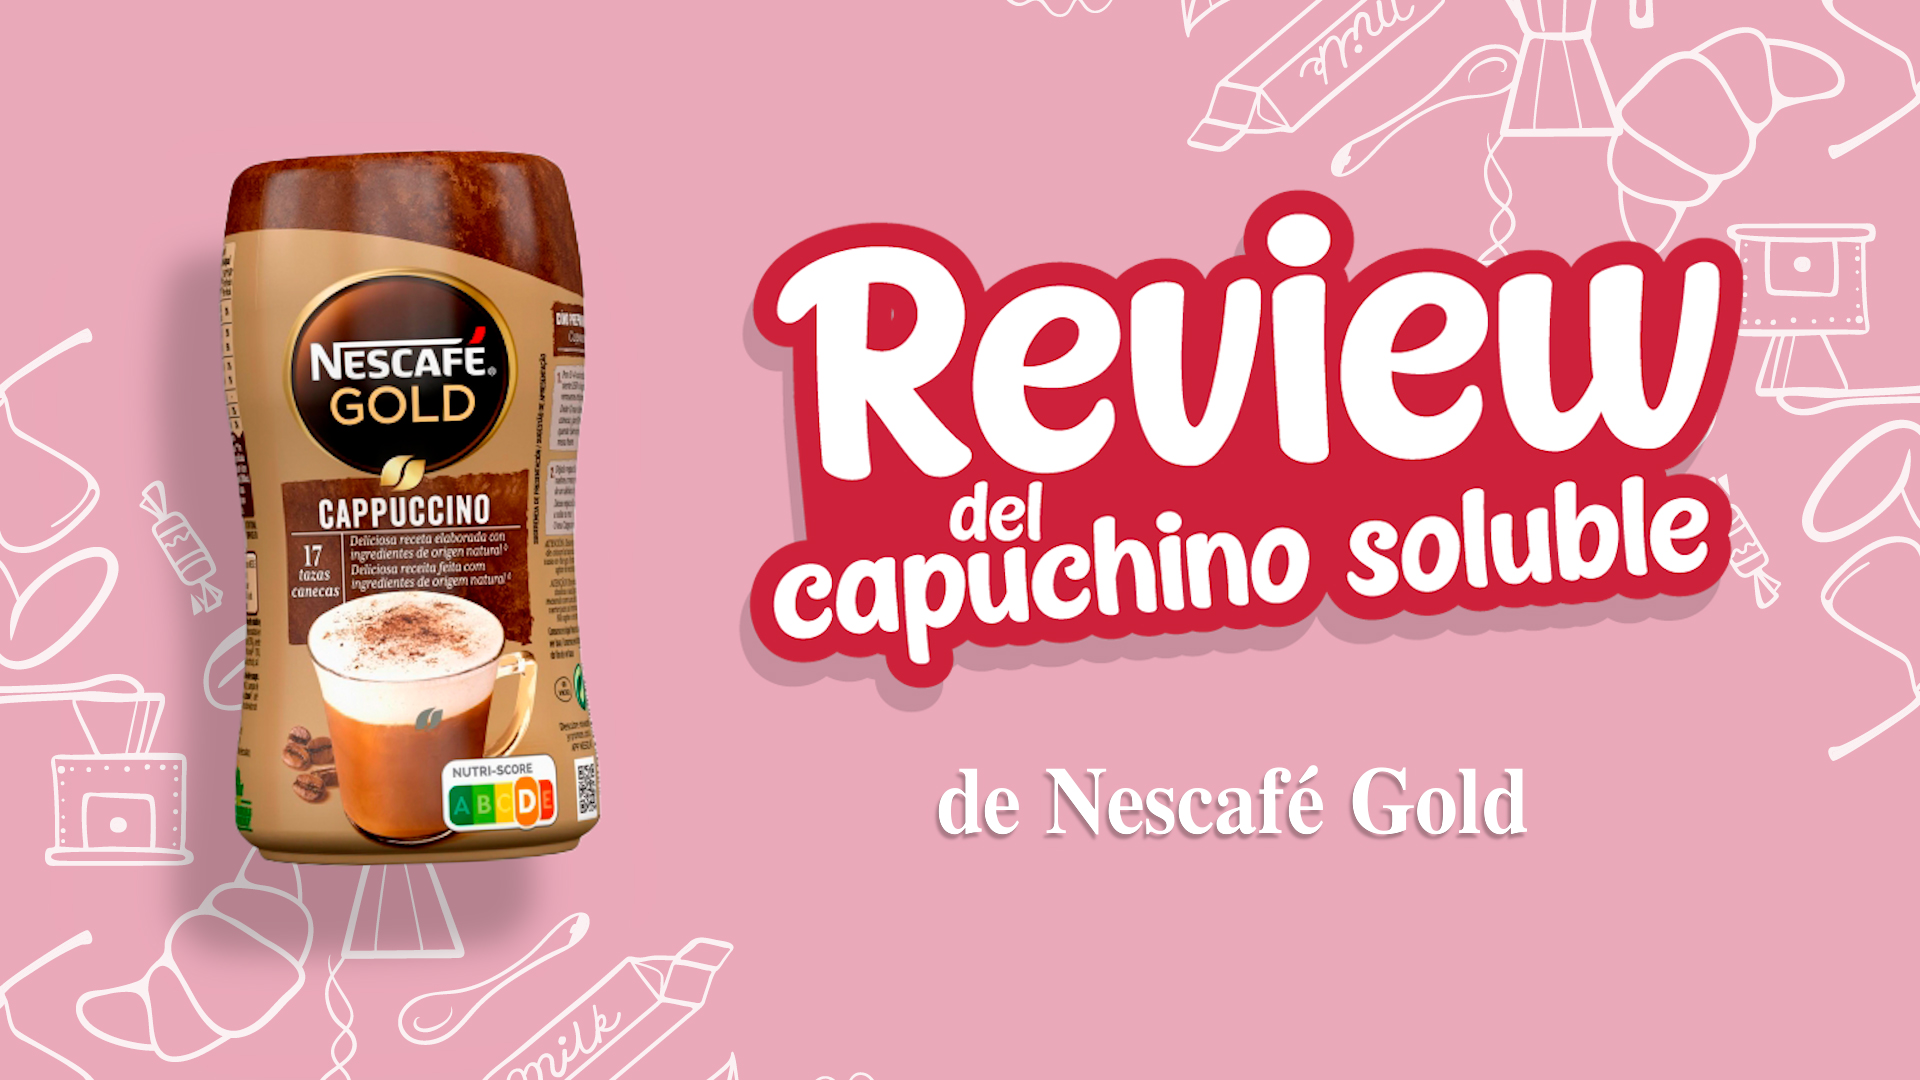 Cappuccino soluble NescafÃ© Gold